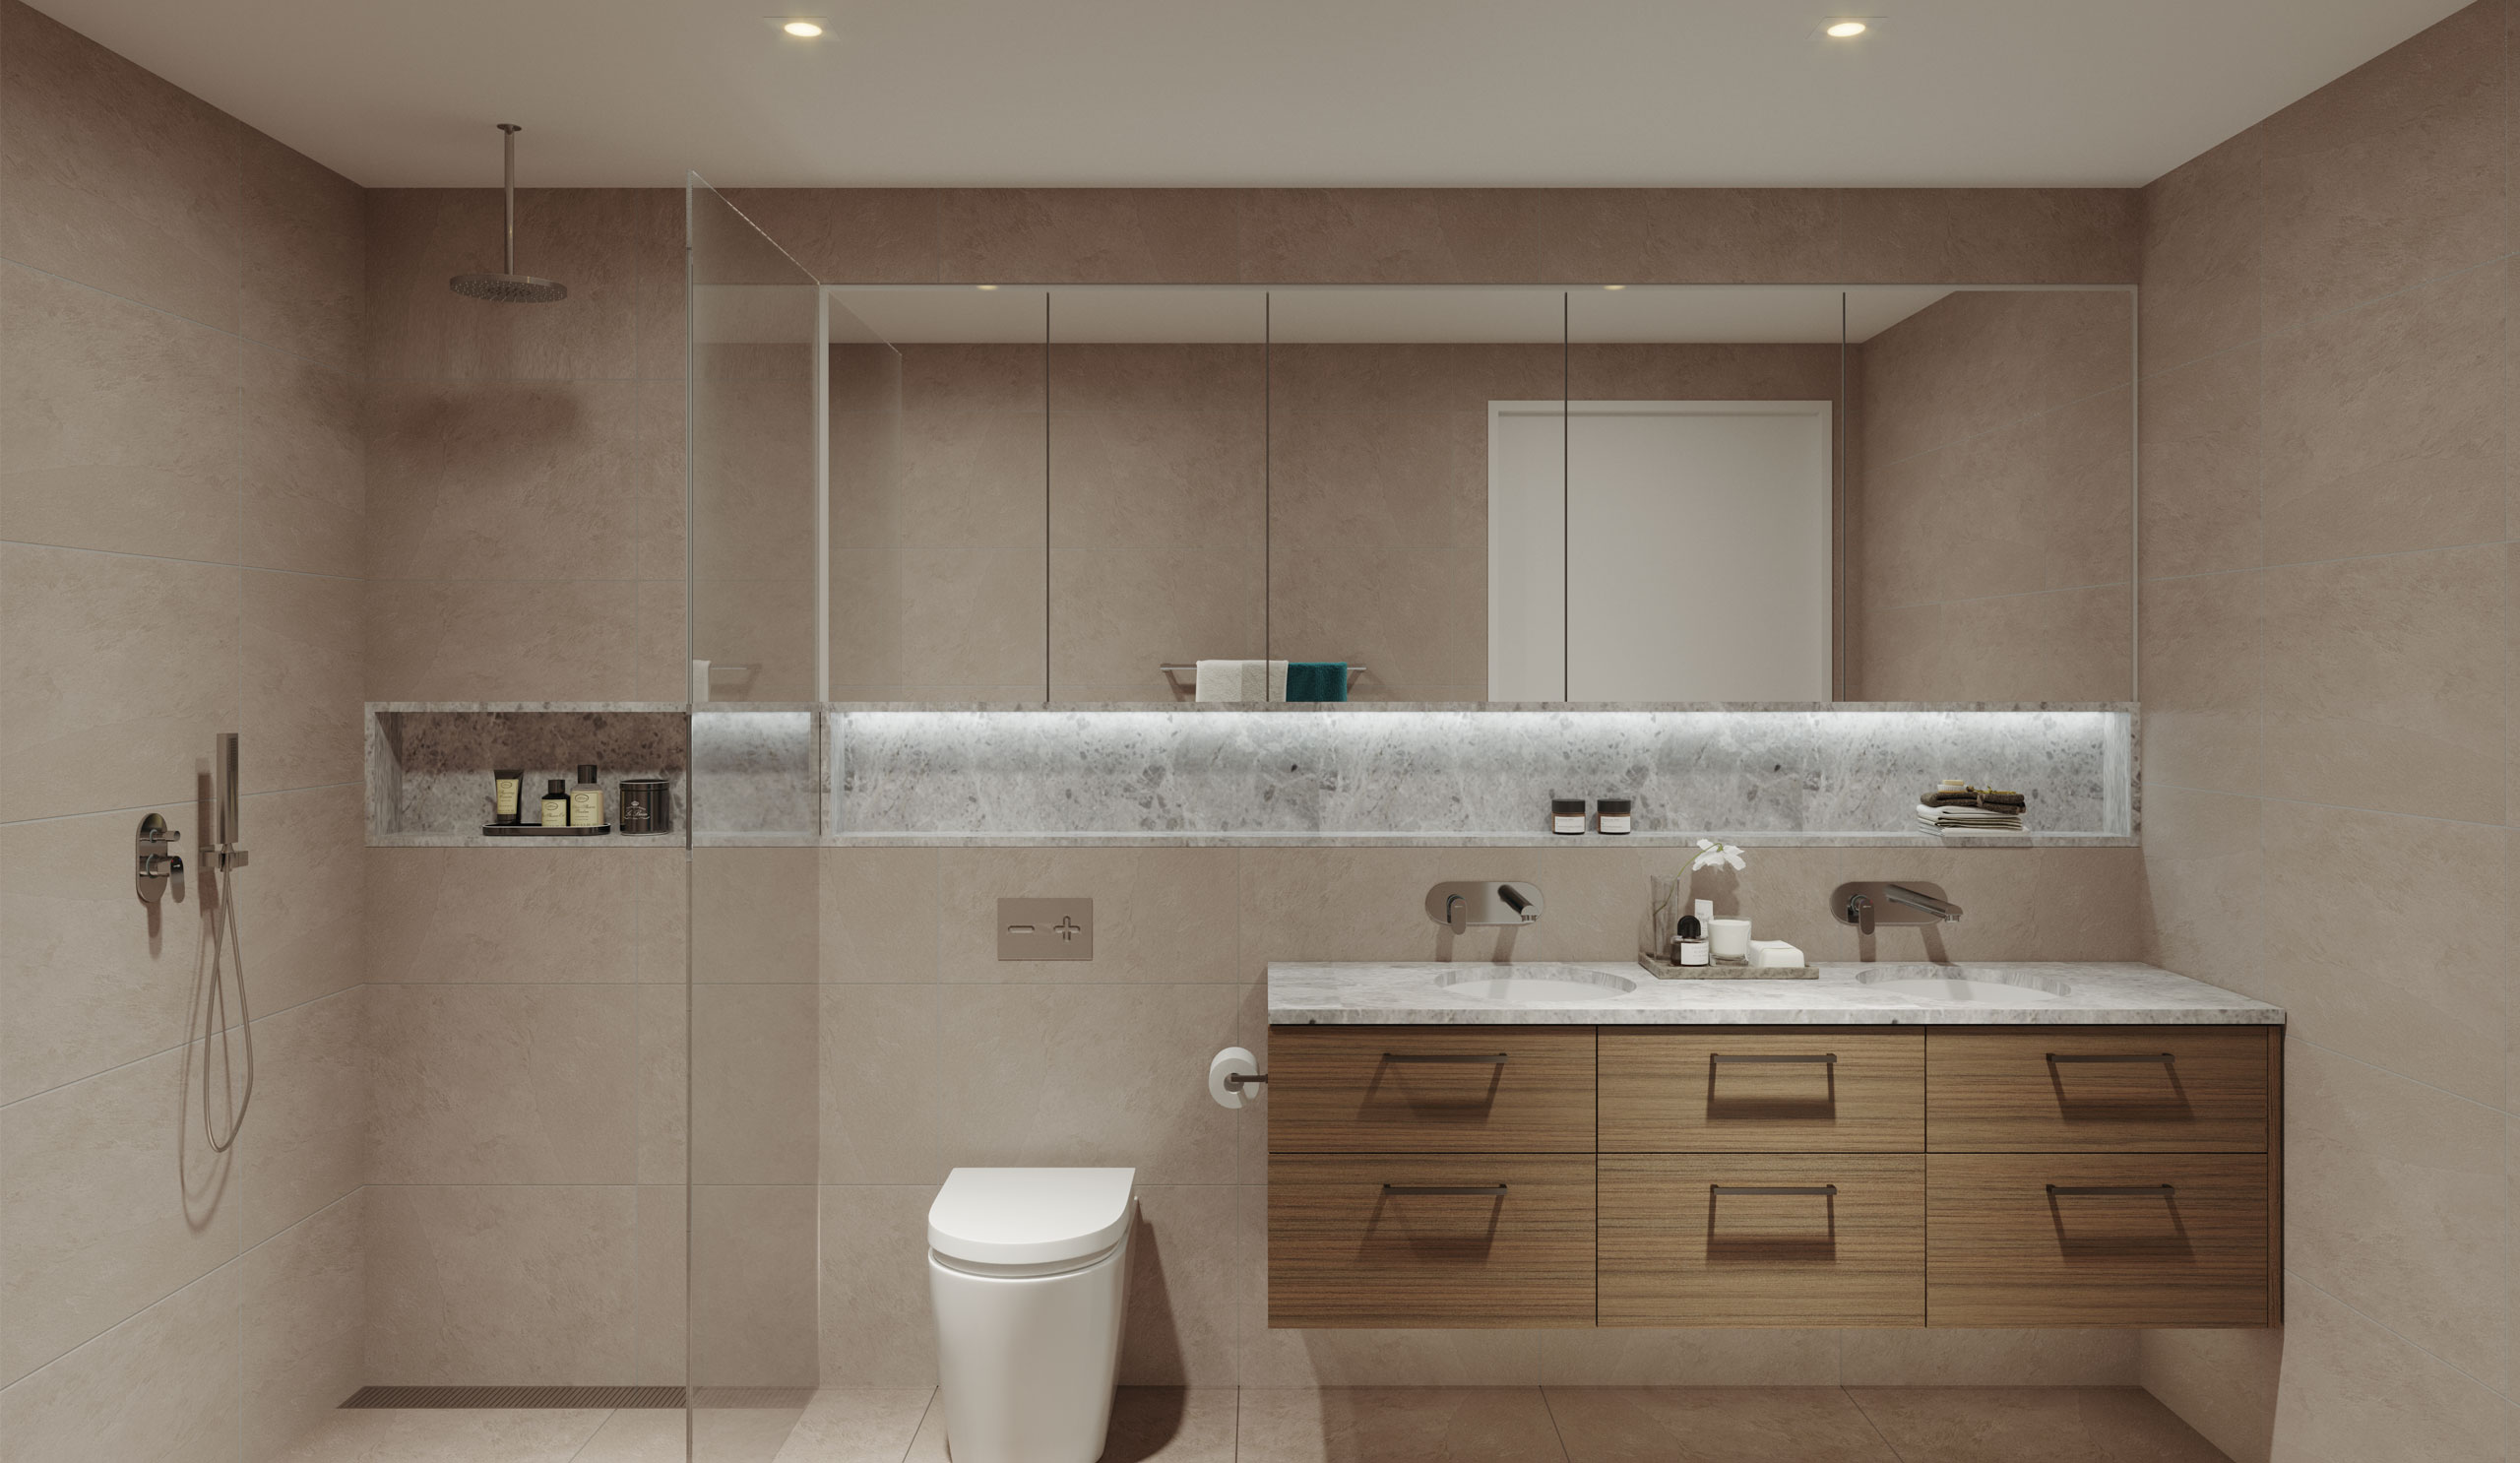 Clean lines and elegant details in the bathrooms <br> (shown in dark scheme) - artist impression